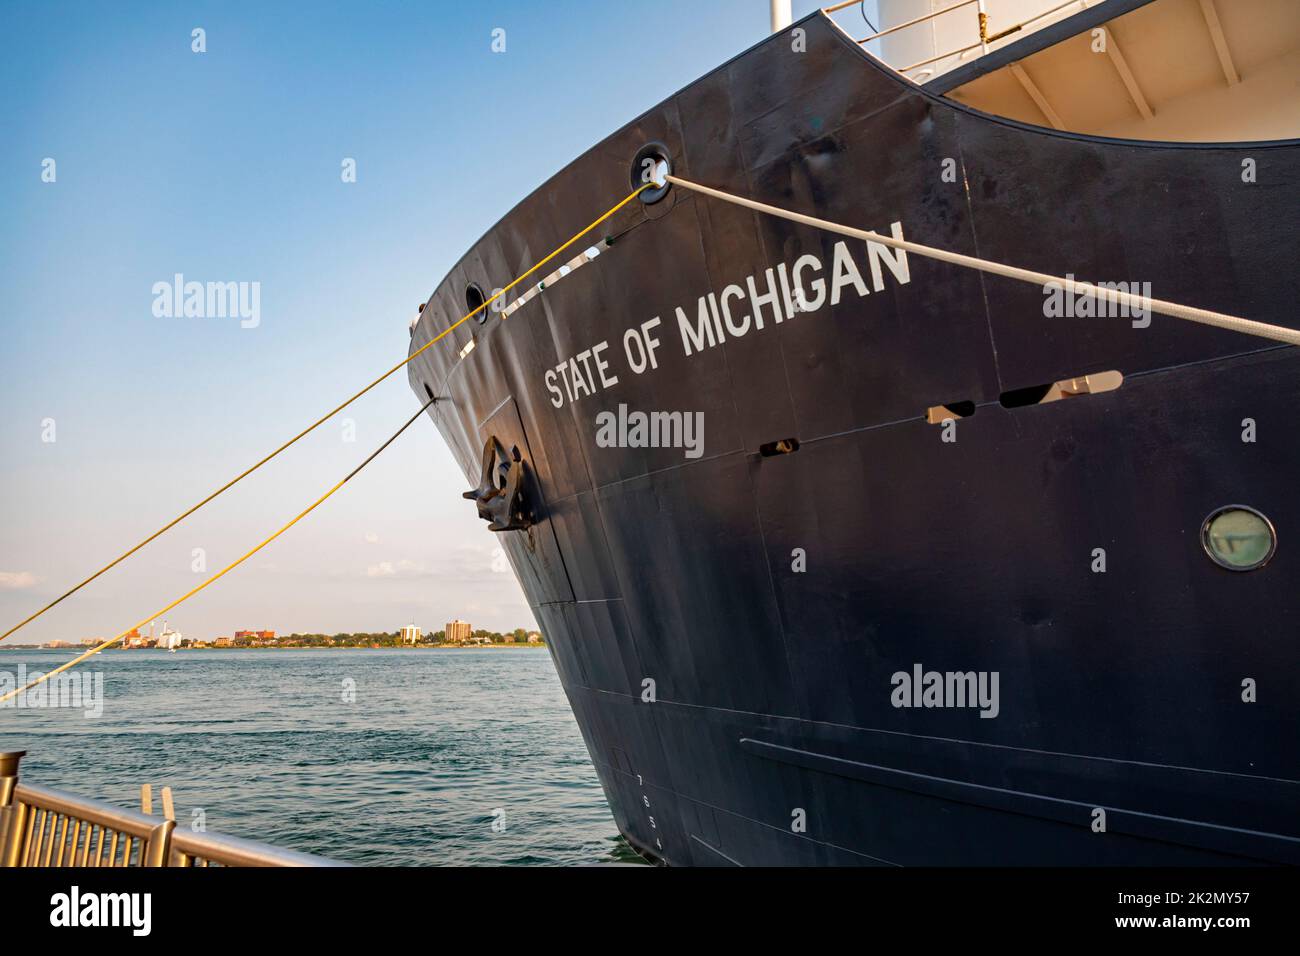 Detroit, Michigan - lo "Stato del Michigan", ormeggiato sul fiume Detroit. La nave è una nave da addestramento gestita dall'Accademia marittima dei grandi Laghi A. Foto Stock